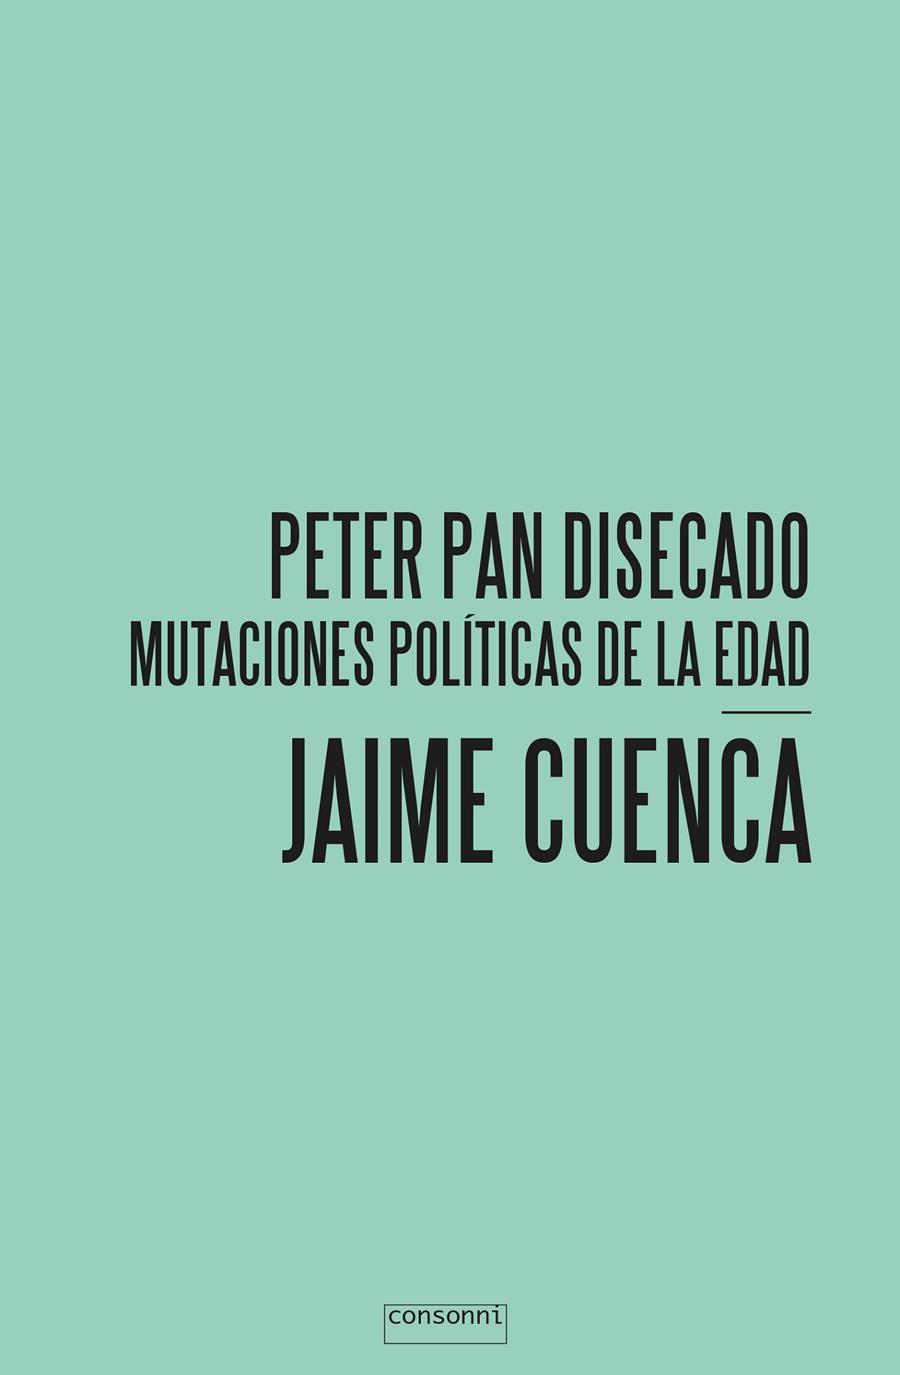 Peter Pan Disecado mutaciones políticas de la edad | Jaime Cuenca